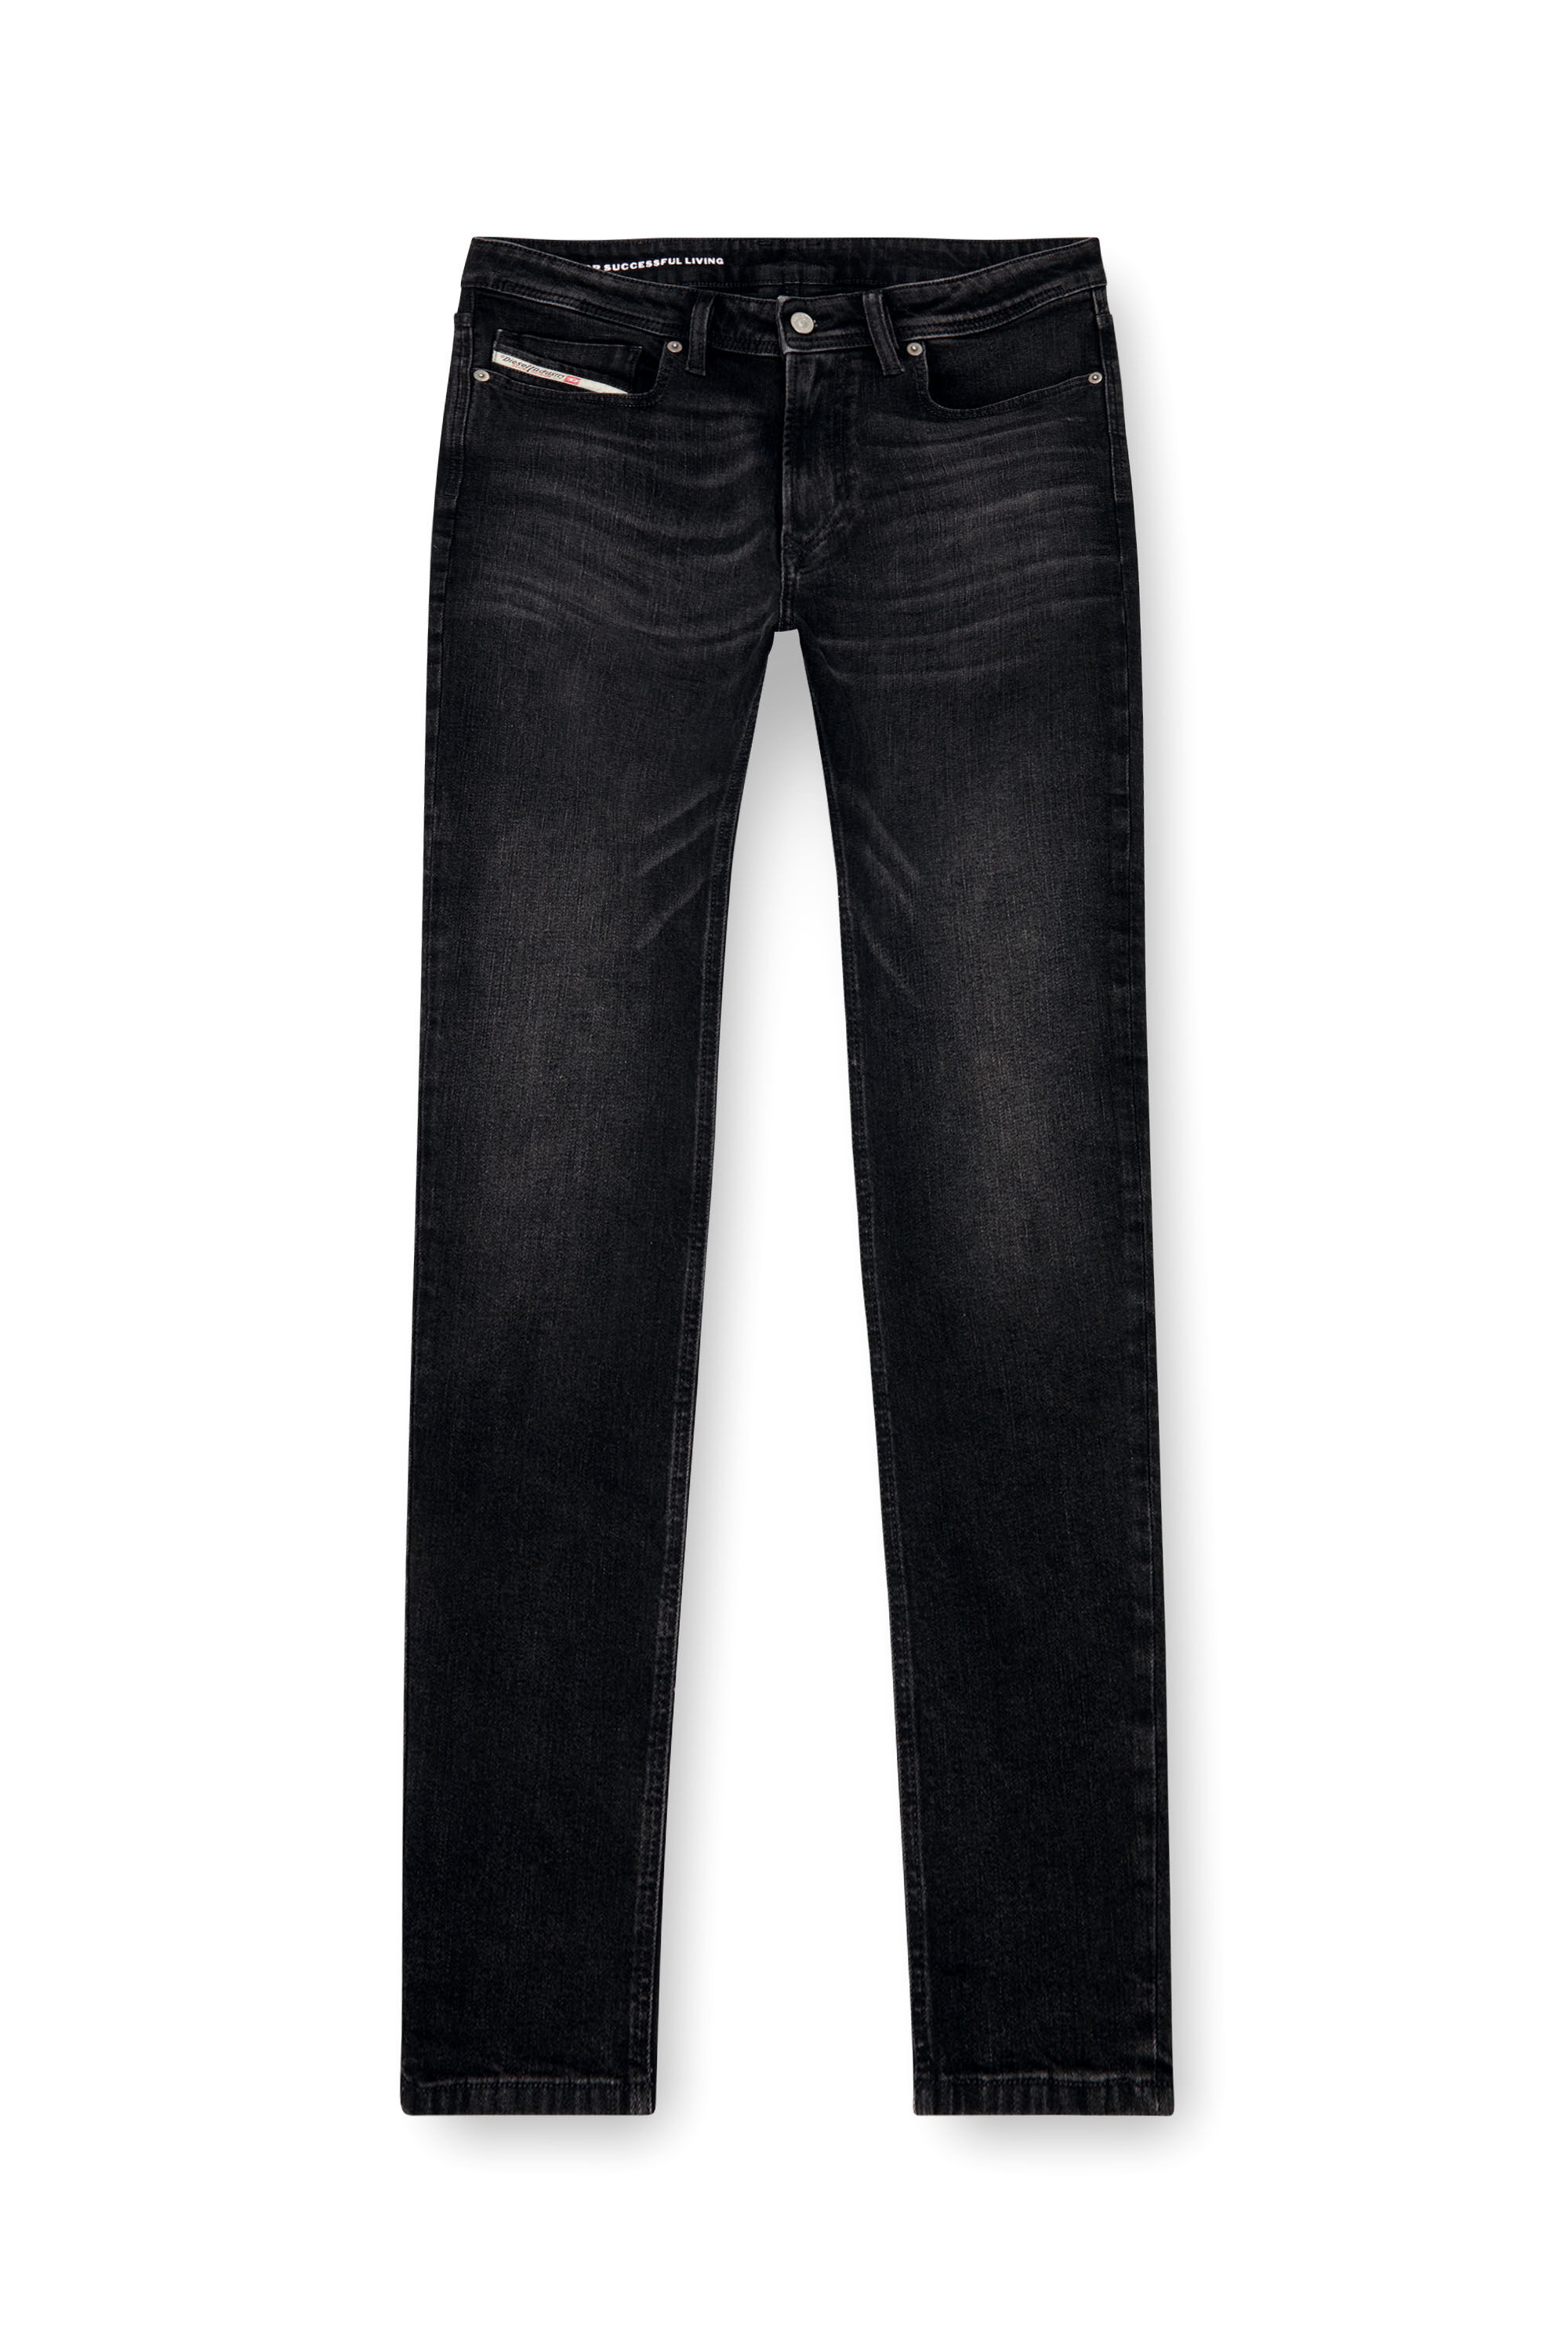 Diesel - Skinny Jeans 1979 Sleenker 0GRDA, Hombre Skinny Jeans - 1979 Sleenker in Negro - Image 2